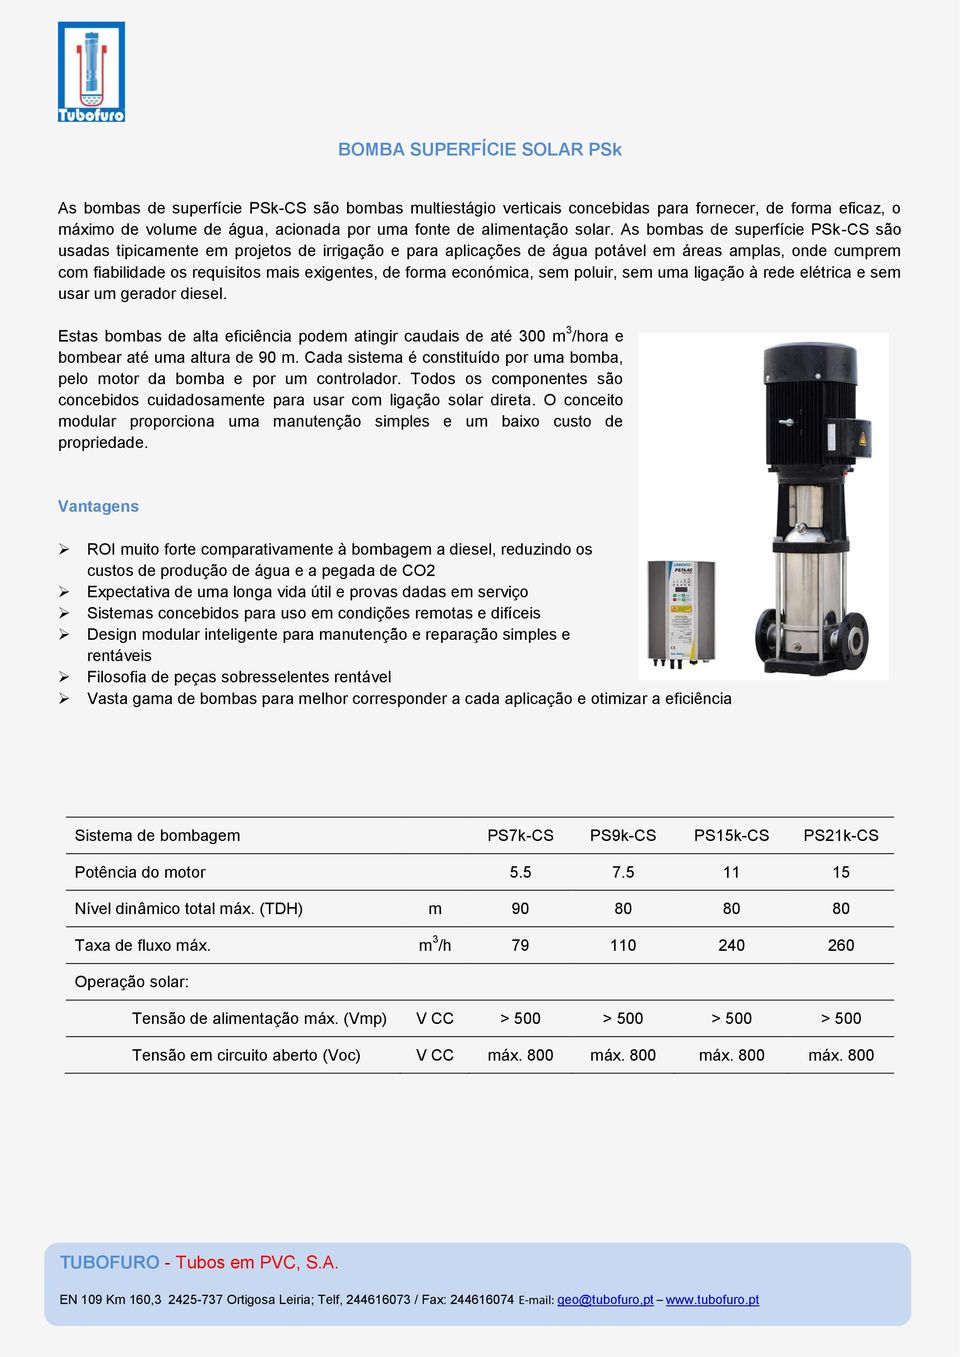 As bombas de superfície PSk-CS são usadas tipicamente em projetos de irrigação e para aplicações de água potável em áreas amplas, onde cumprem com fiabilidade os requisitos mais exigentes, de forma